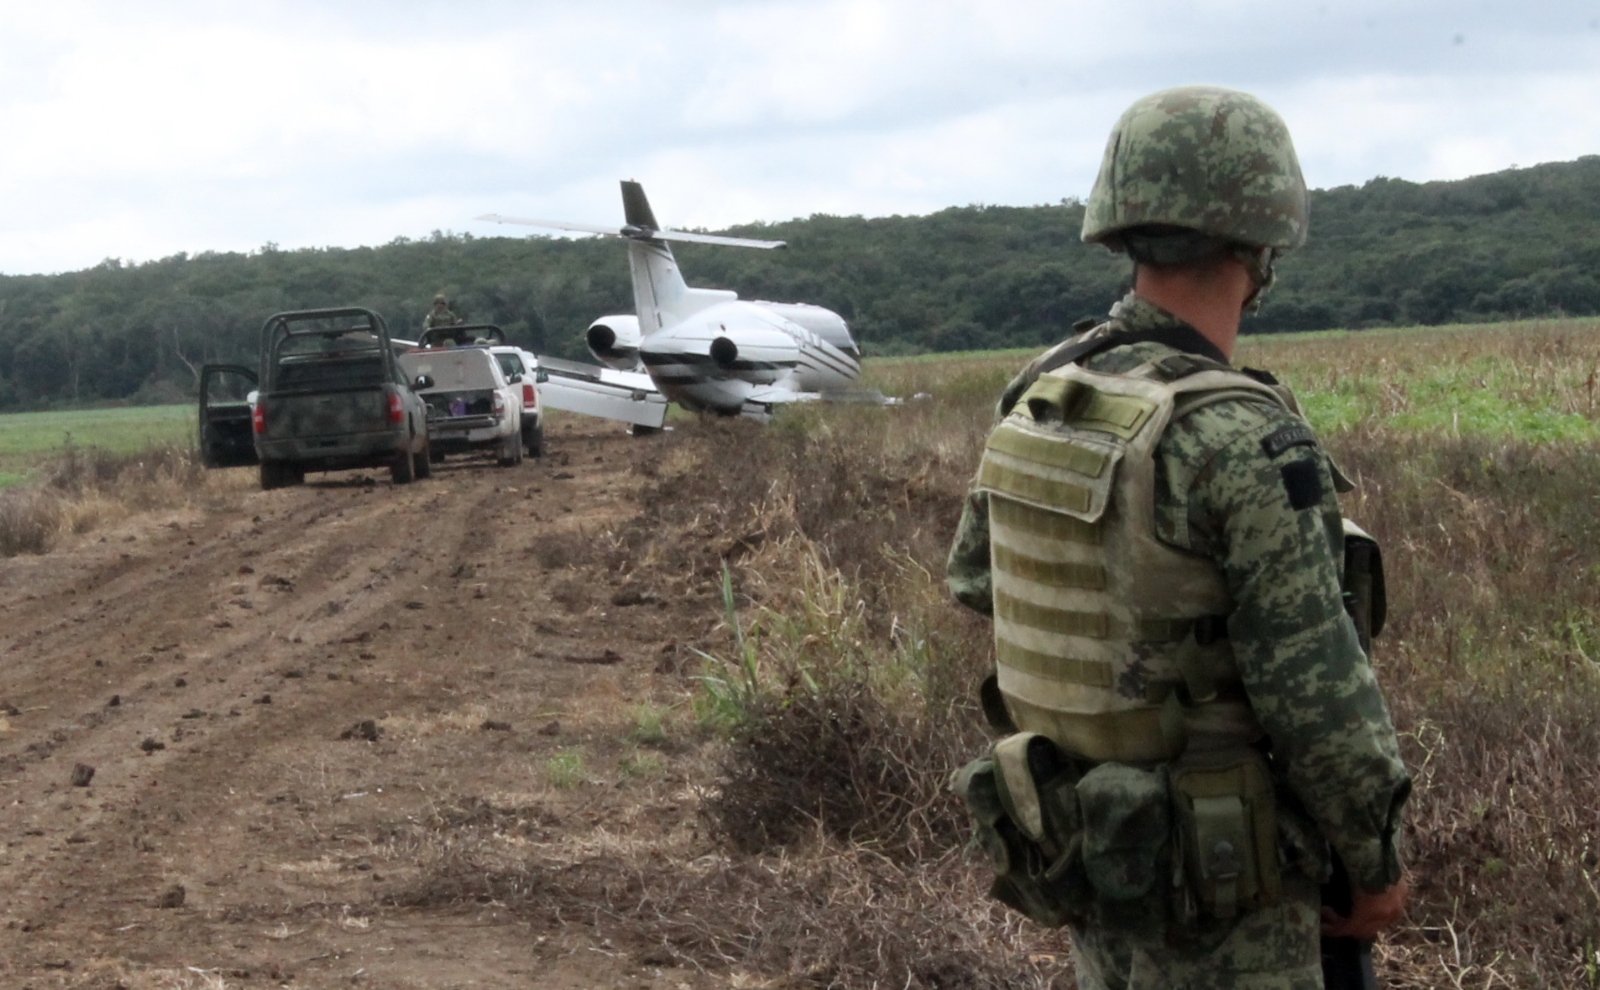 Venta de droga va en aumento en Campeche, más de 31 denuncias: SESNSP